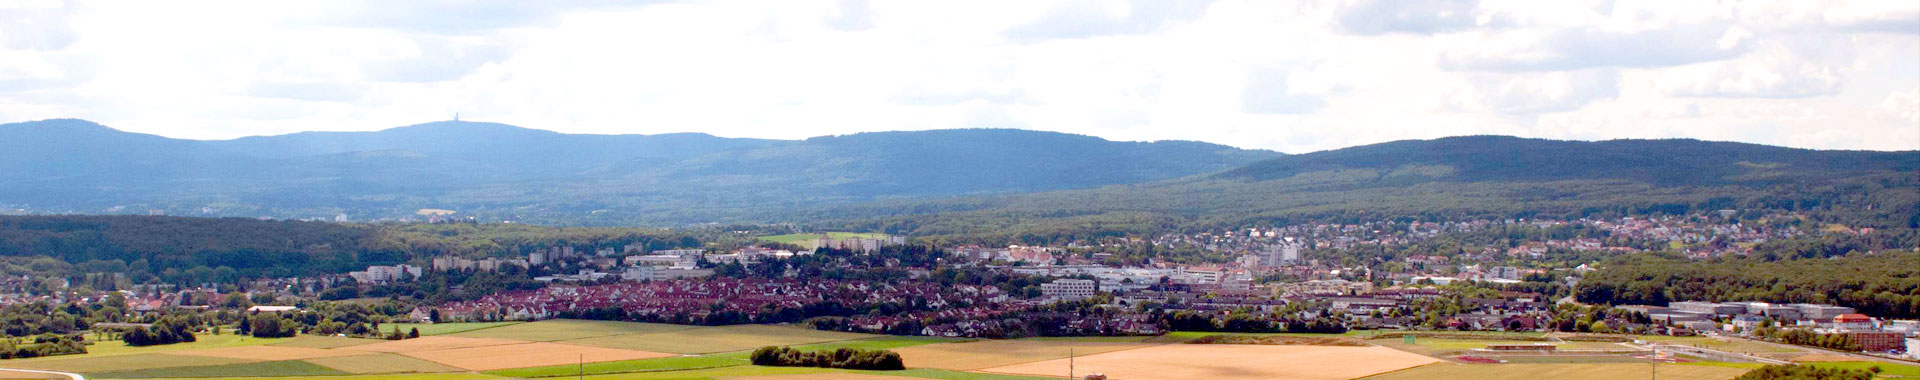 Gesamtstadt Friedrichsdorf am Taunushang mit Blick auf den Feldberg